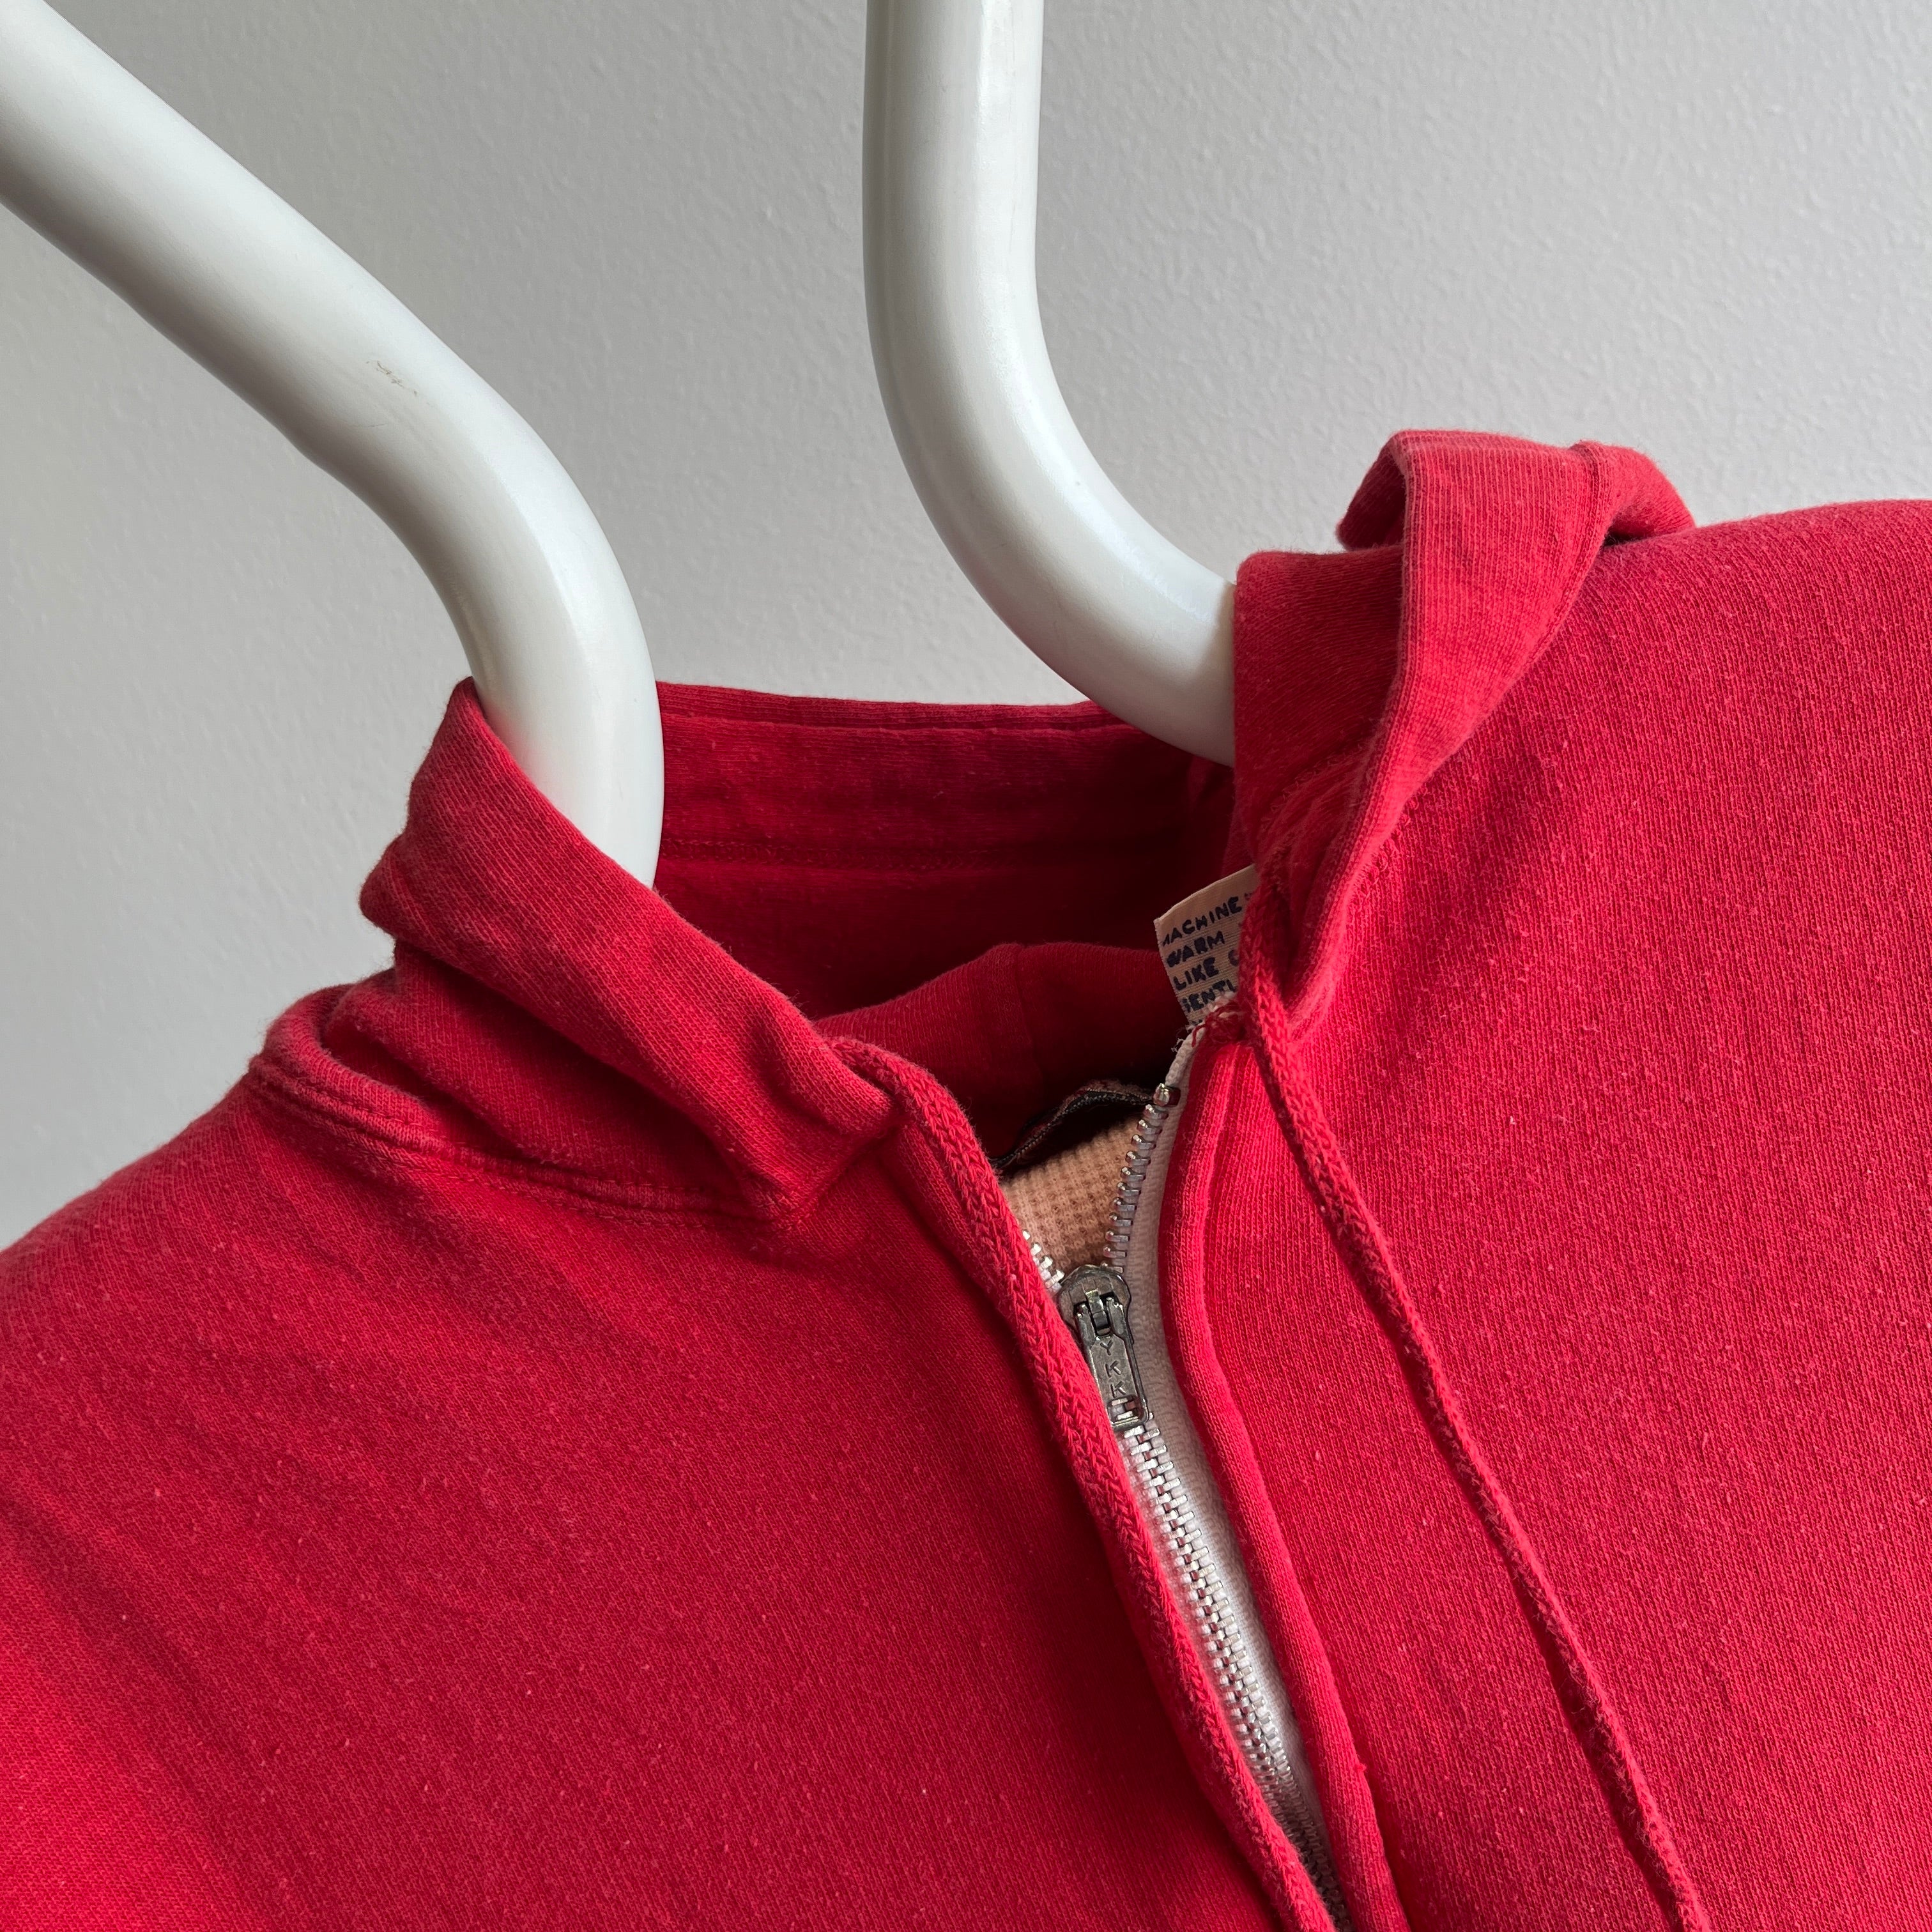 1980s Sleeveless Insulated Zip Up Red Hoodie - WOAH